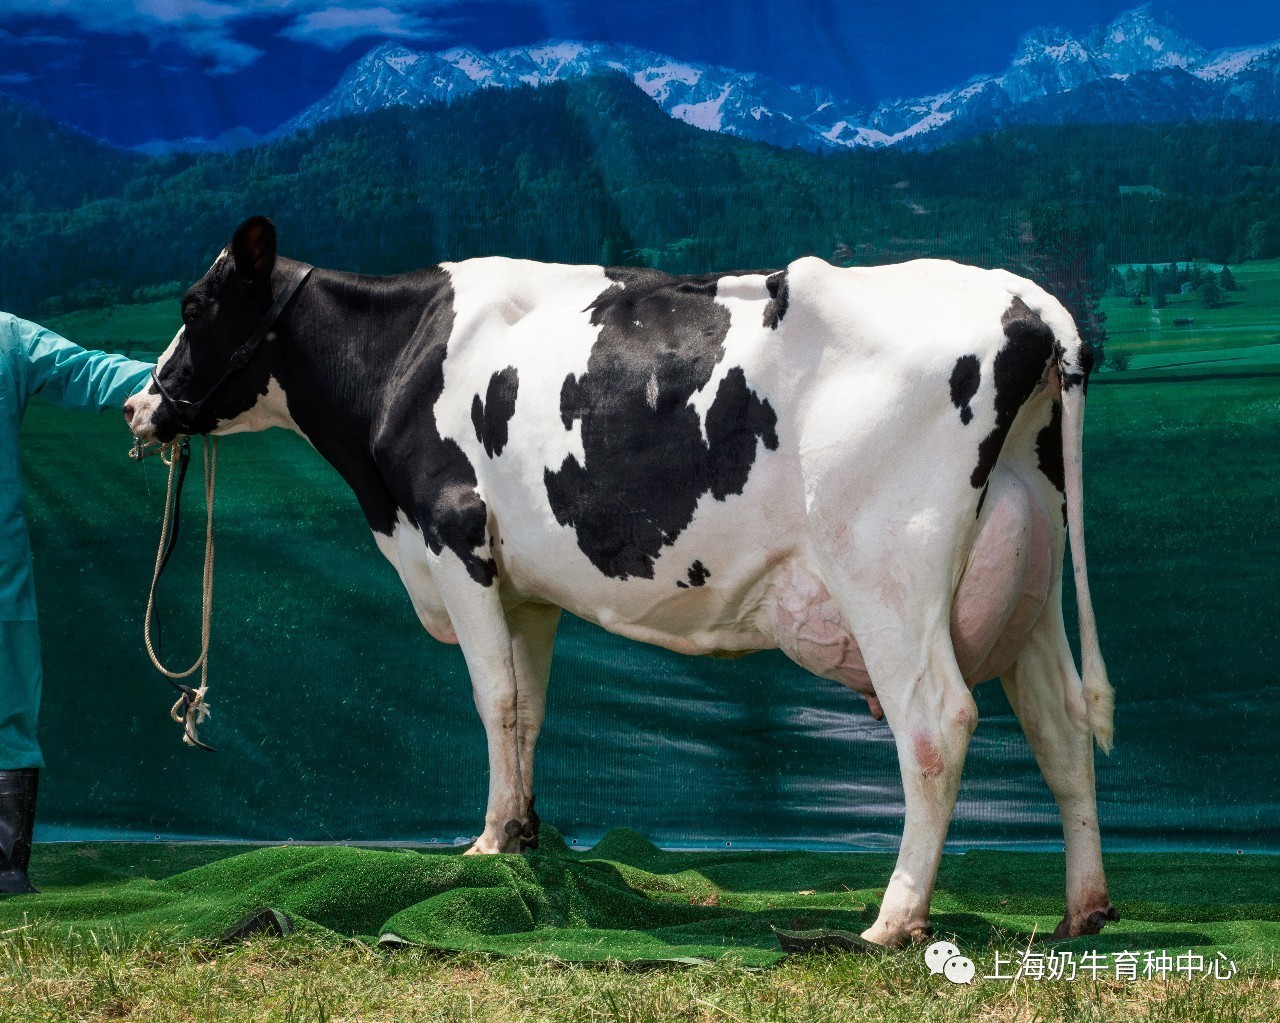 技冠群芳,倾国倾城 ——光明荷斯坦在中国首届奶牛选美大赛上斩获冠